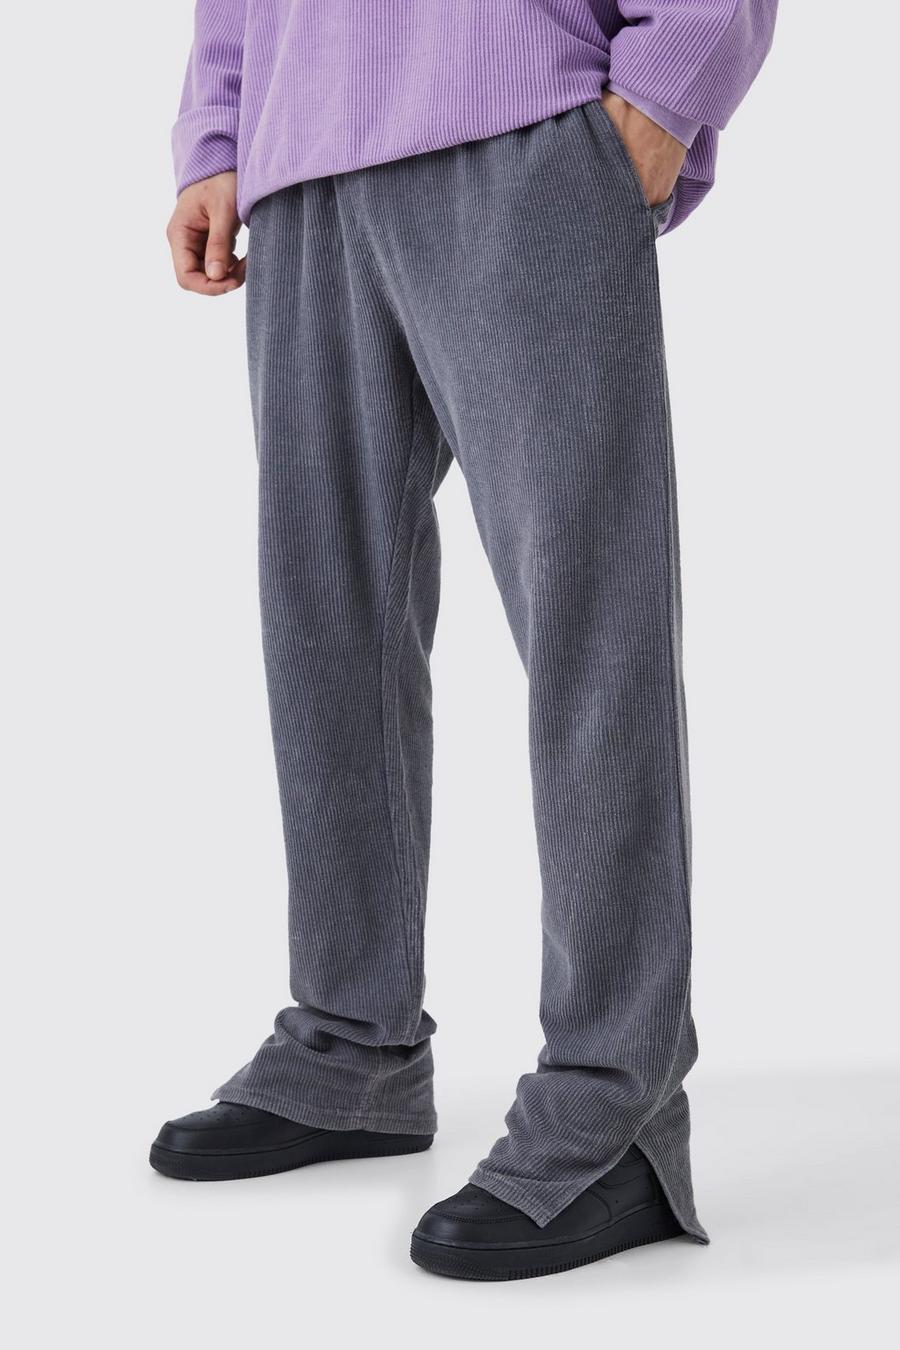 Pantaloni tuta Tall slavati in velluto a coste Regular Fit con spacco sul fondo, Charcoal